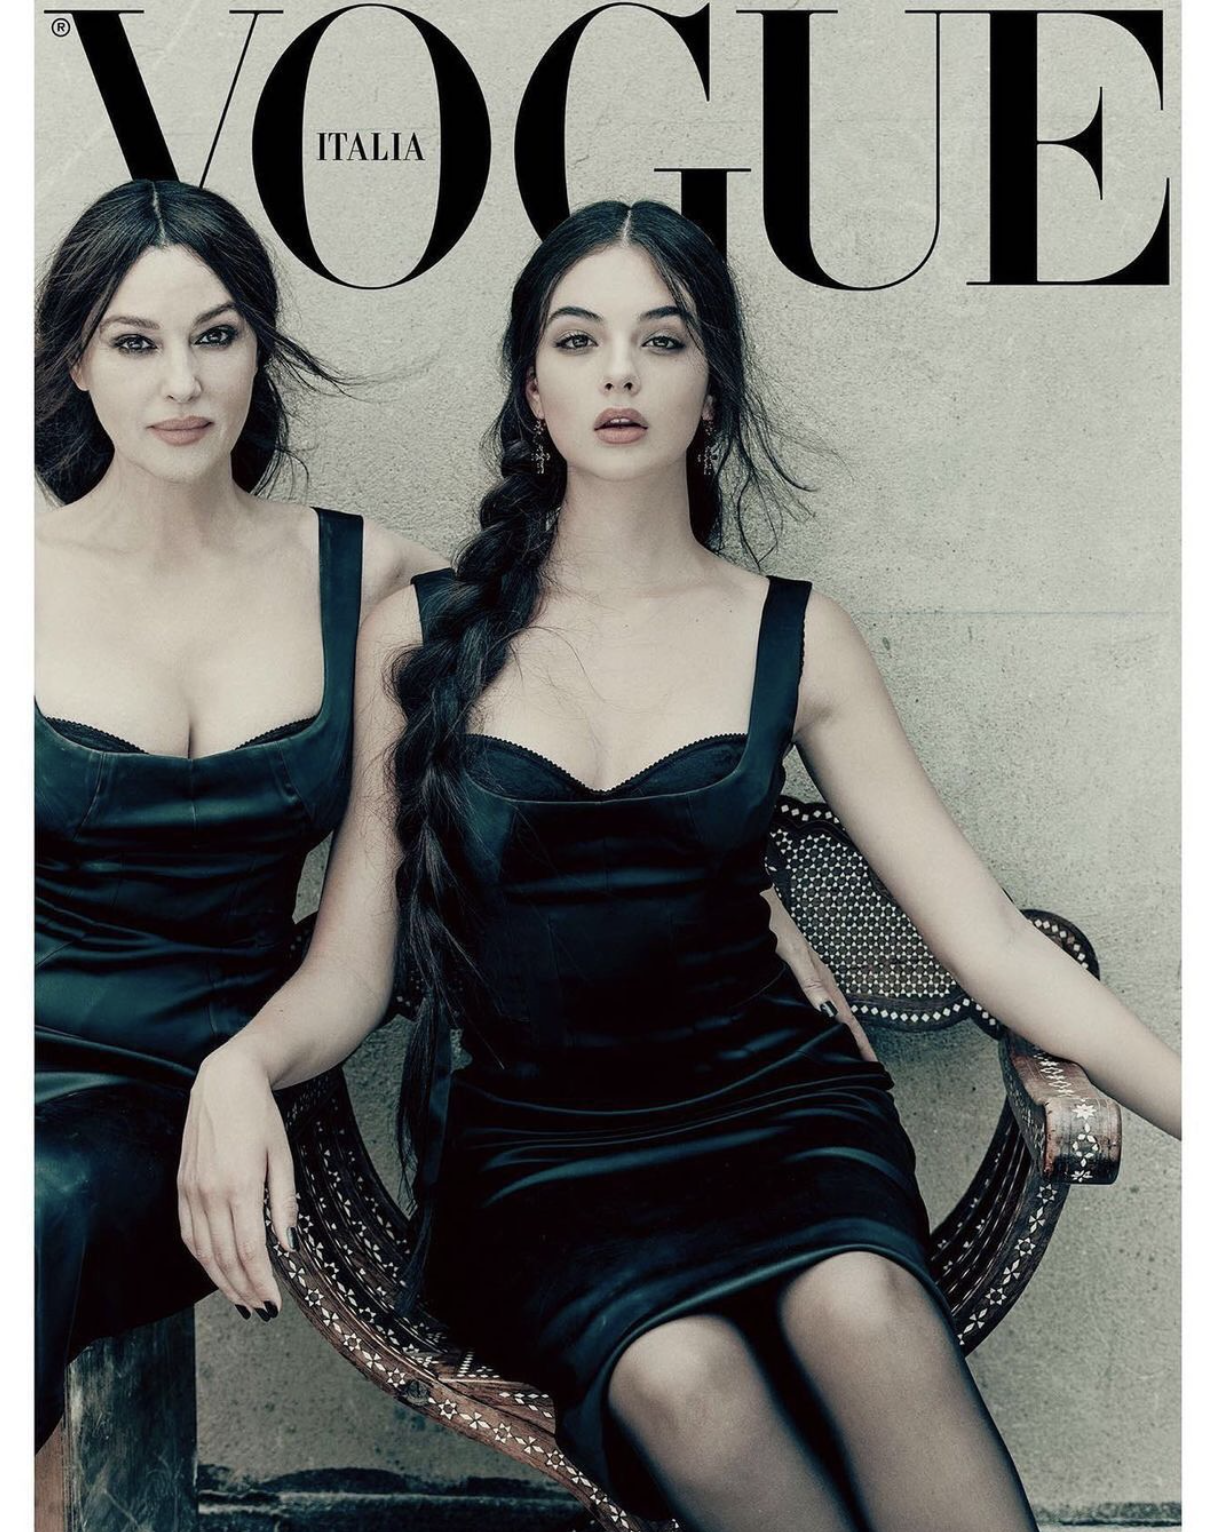 Моника Беллучи с дочерью Девой на обложке Vogue.